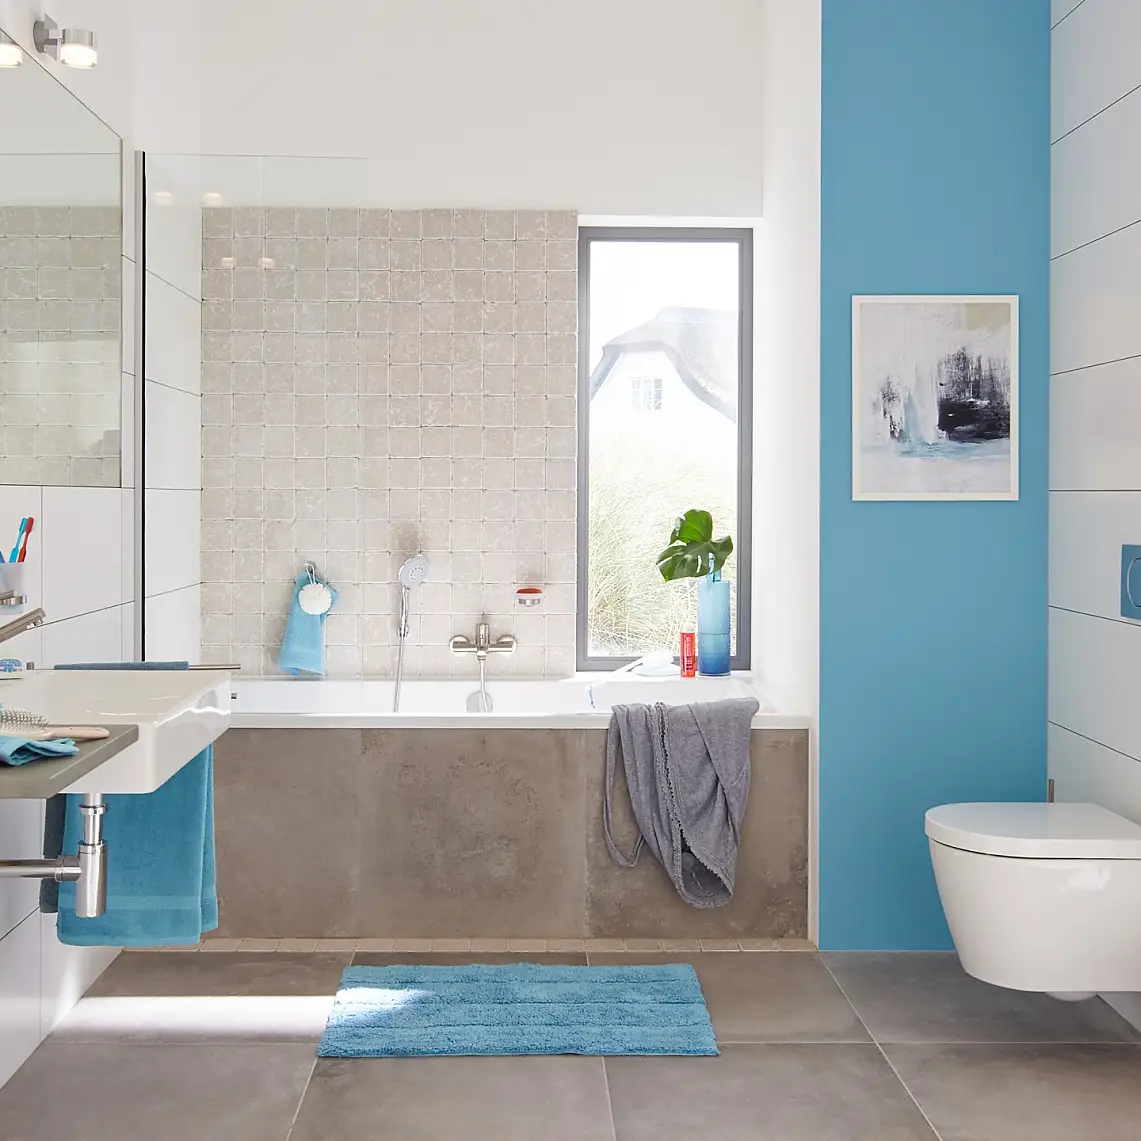 Moderný dizajn, ktorý poskytuje priestor a štruktúru vo vašej kúpeľni.